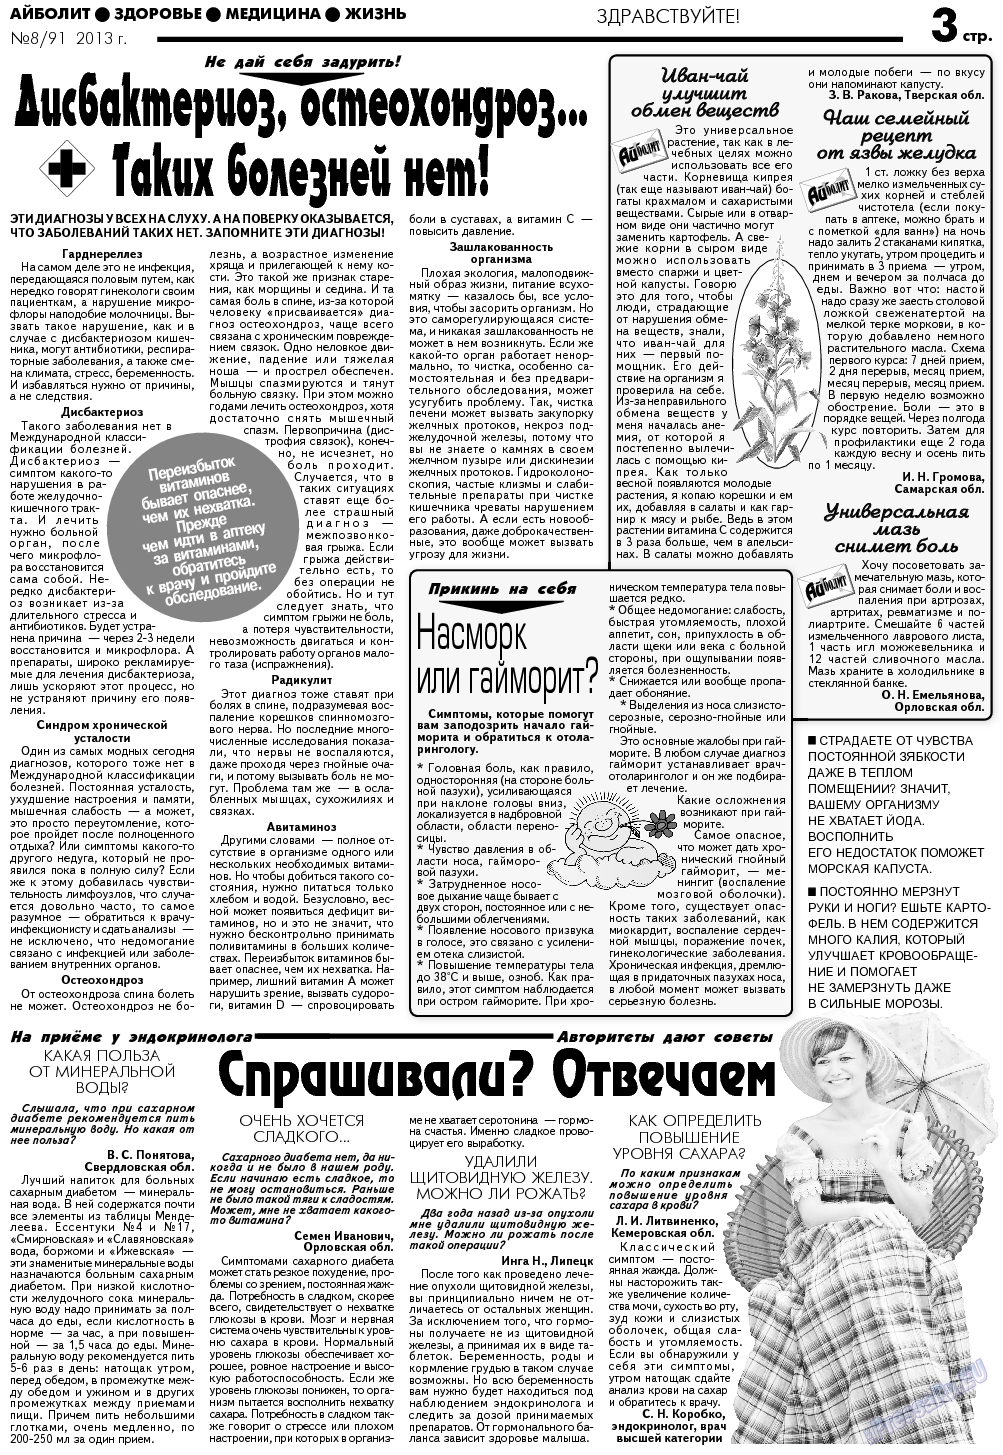 АйБолит, газета. 2013 №8 стр.3